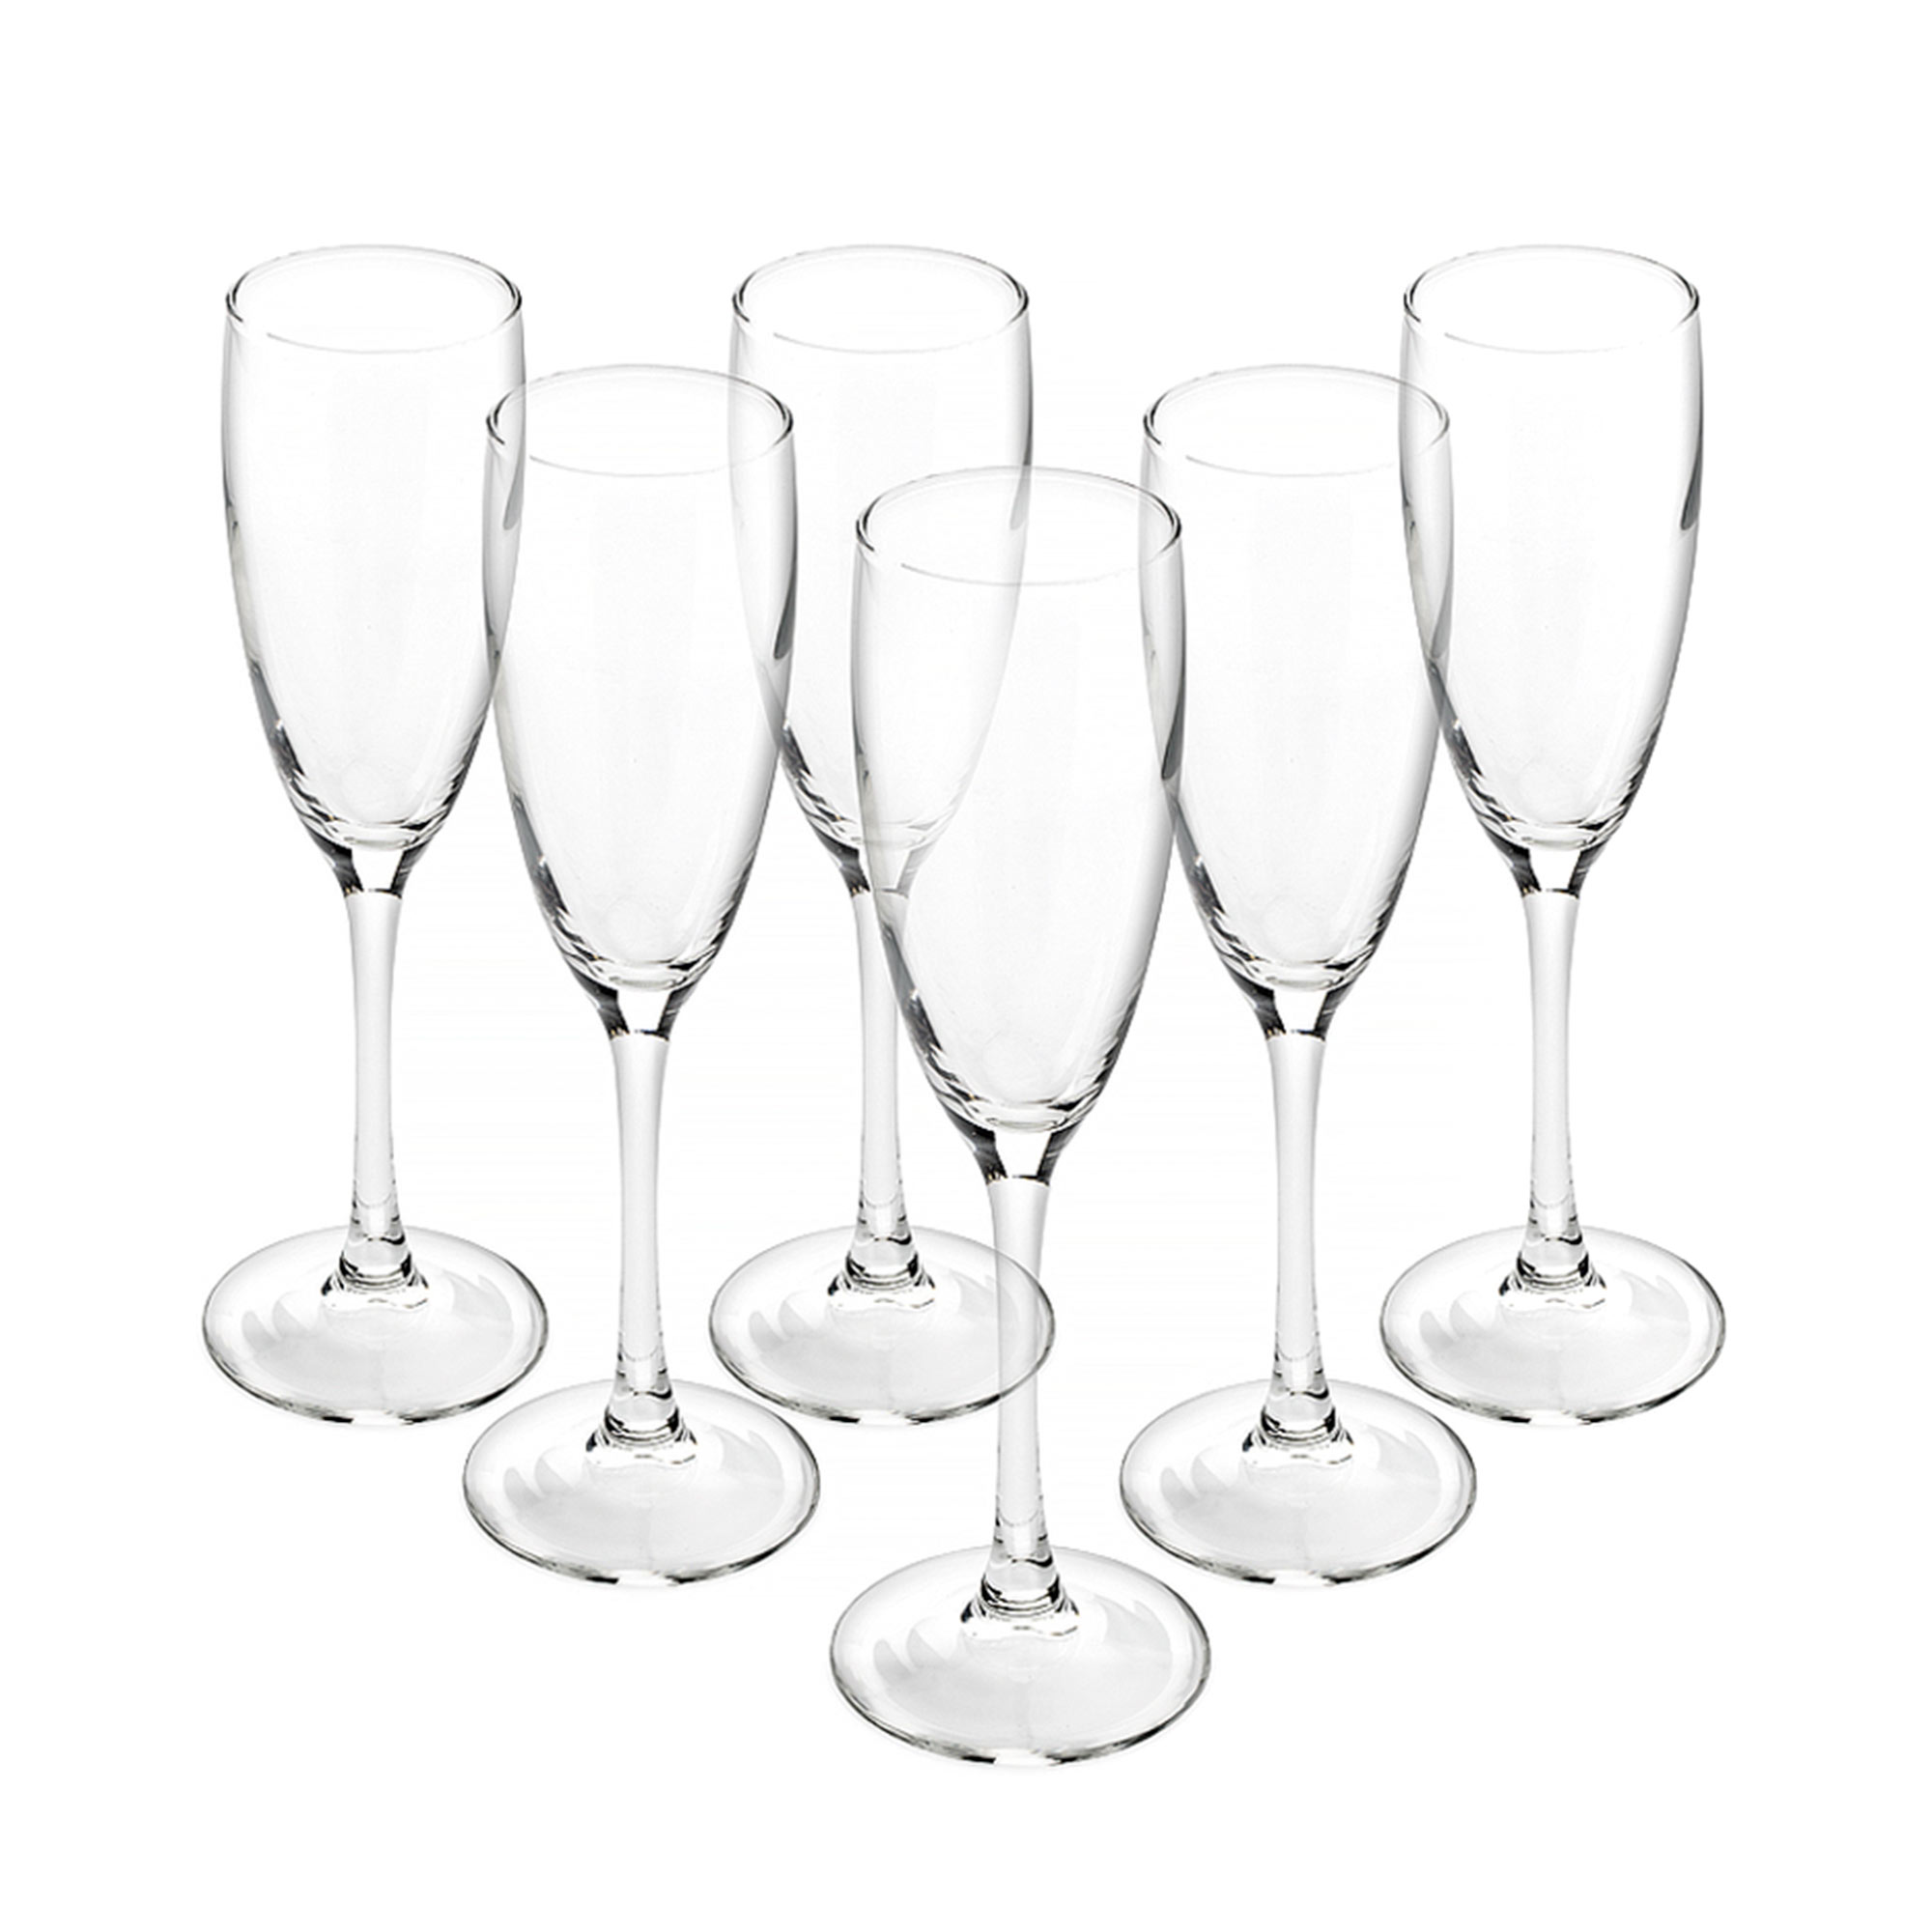 Набор бокалов для шампанского Luminarc Signature/Эталон 170 мл 6 шт набор бокалов для шампанского luminarc ультим 6шт 210мл n4307